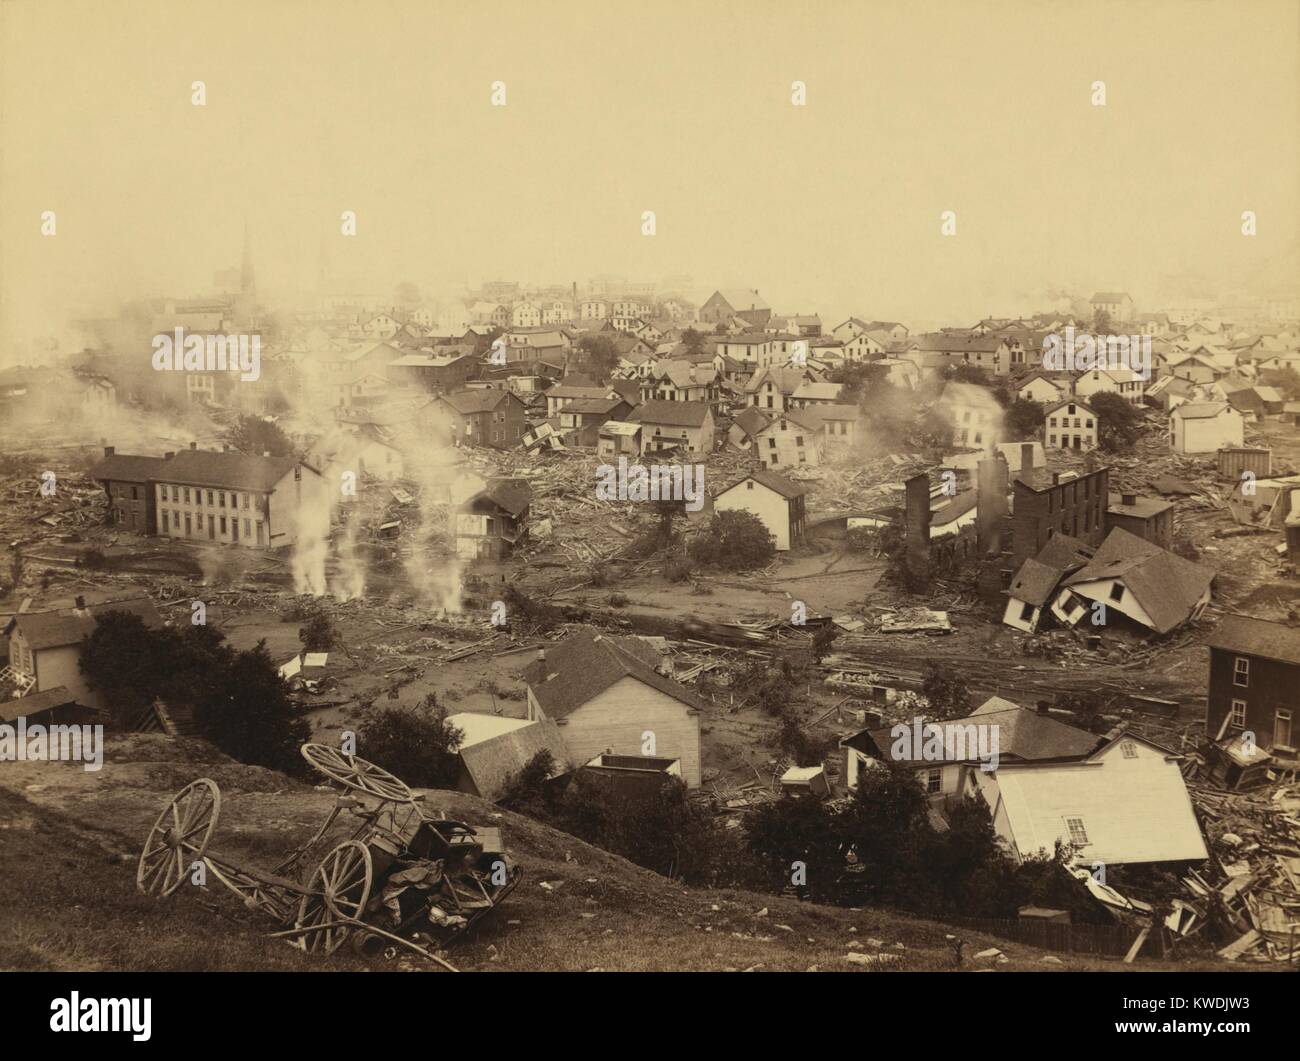 Allgemeine Ansicht von Johnstown von hohen Boden nach der Flut von 31. Mai 1889. Von Pferden gezogene Wagen und Männer arbeiten in der zentralen Mitte Boden, vielleicht erholt sich der Körper (BSLOC 2017 17 74) Stockfoto